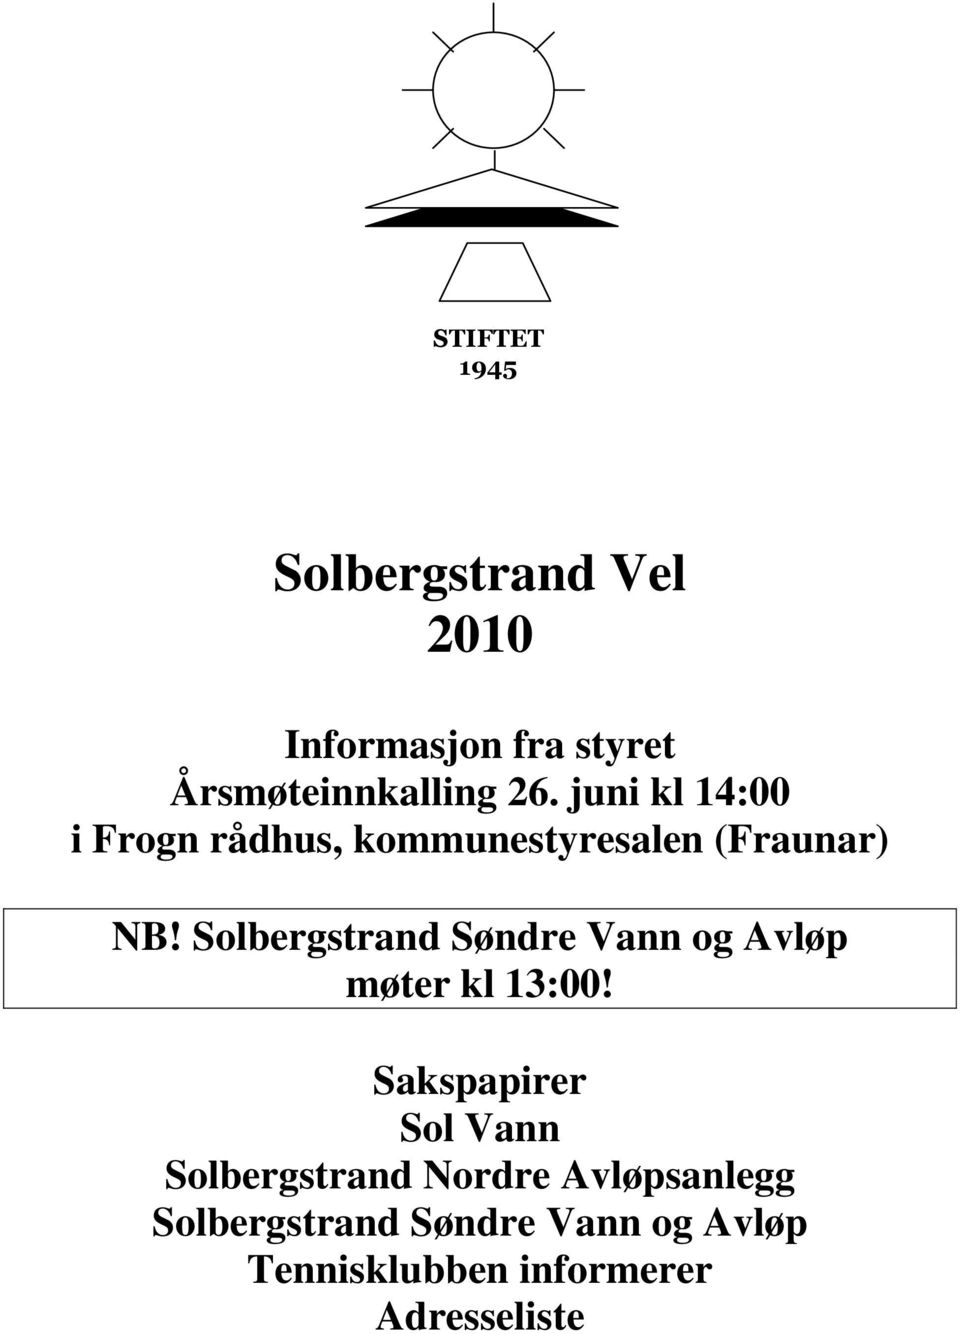 Solbergstrand Søndre Vann og Avløp møter kl 13:00!